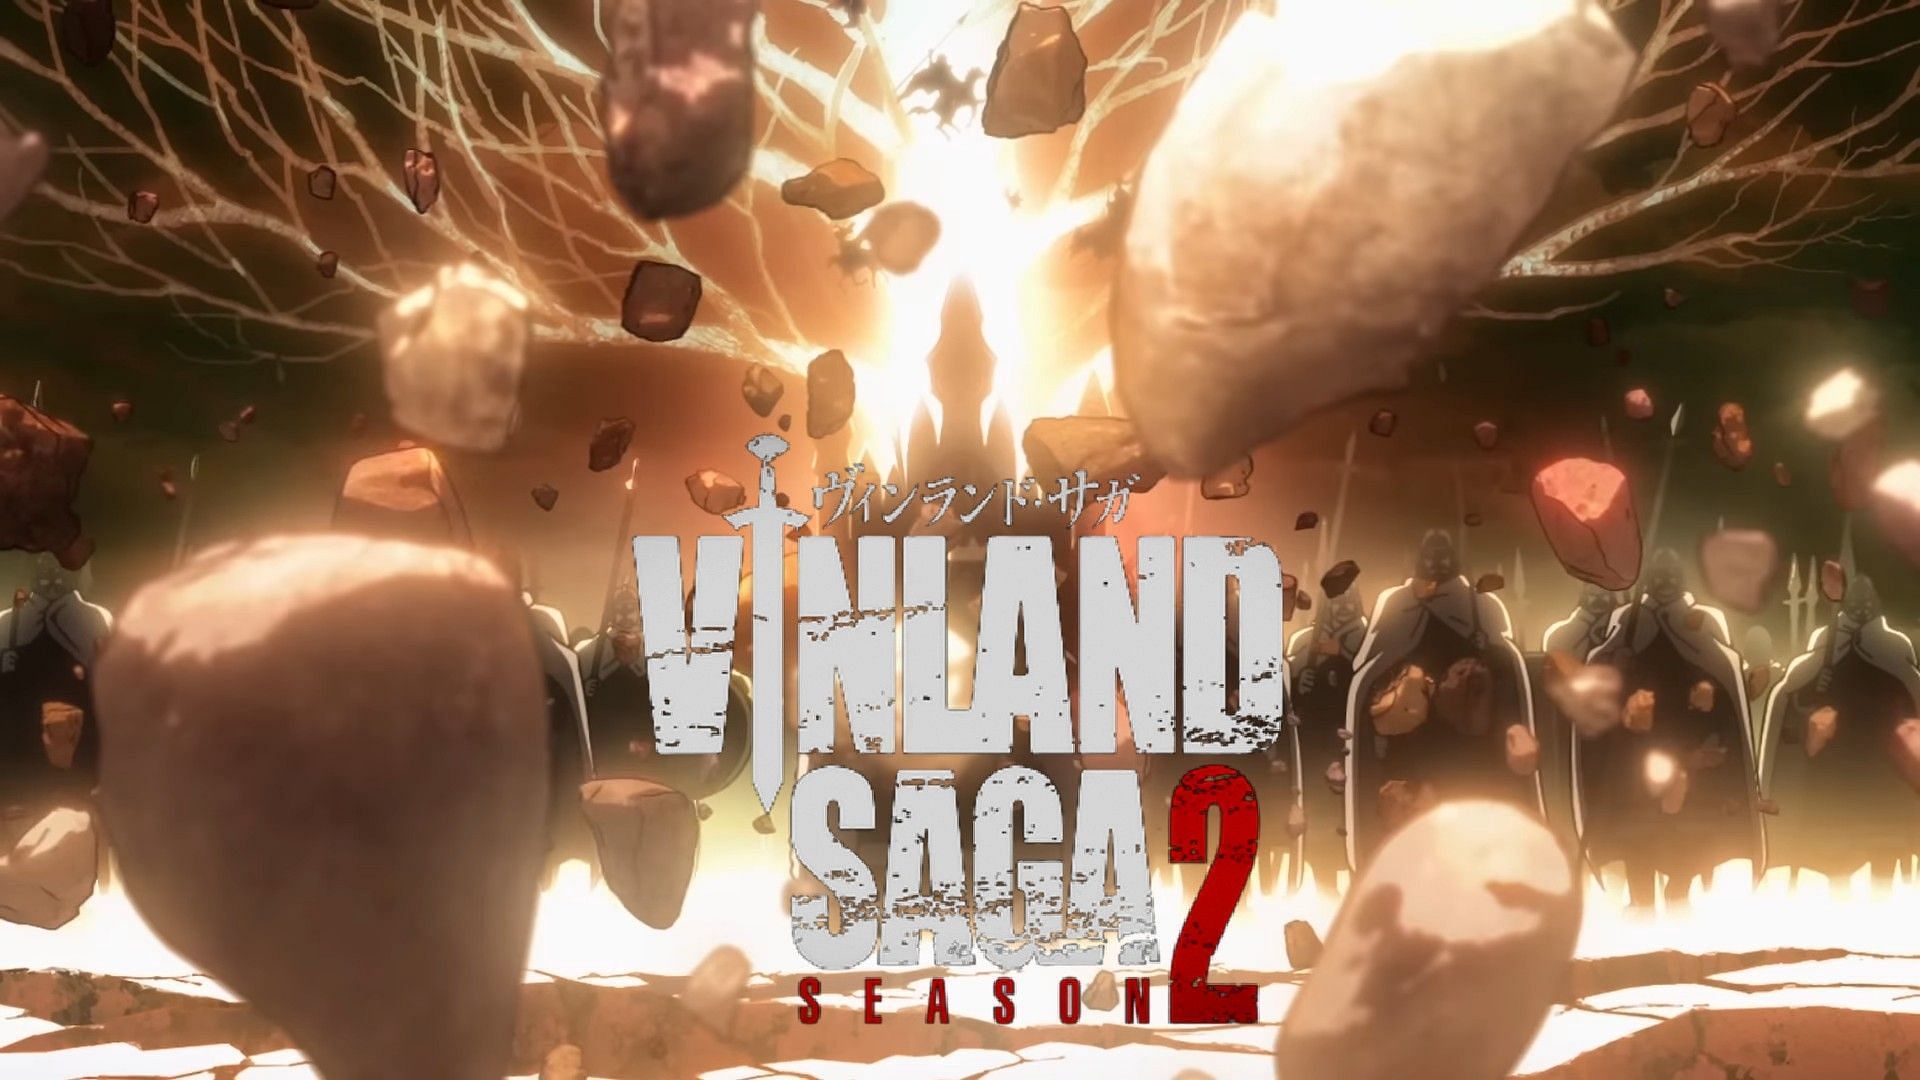 vinland saga season 2 trailer｜TikTok Search